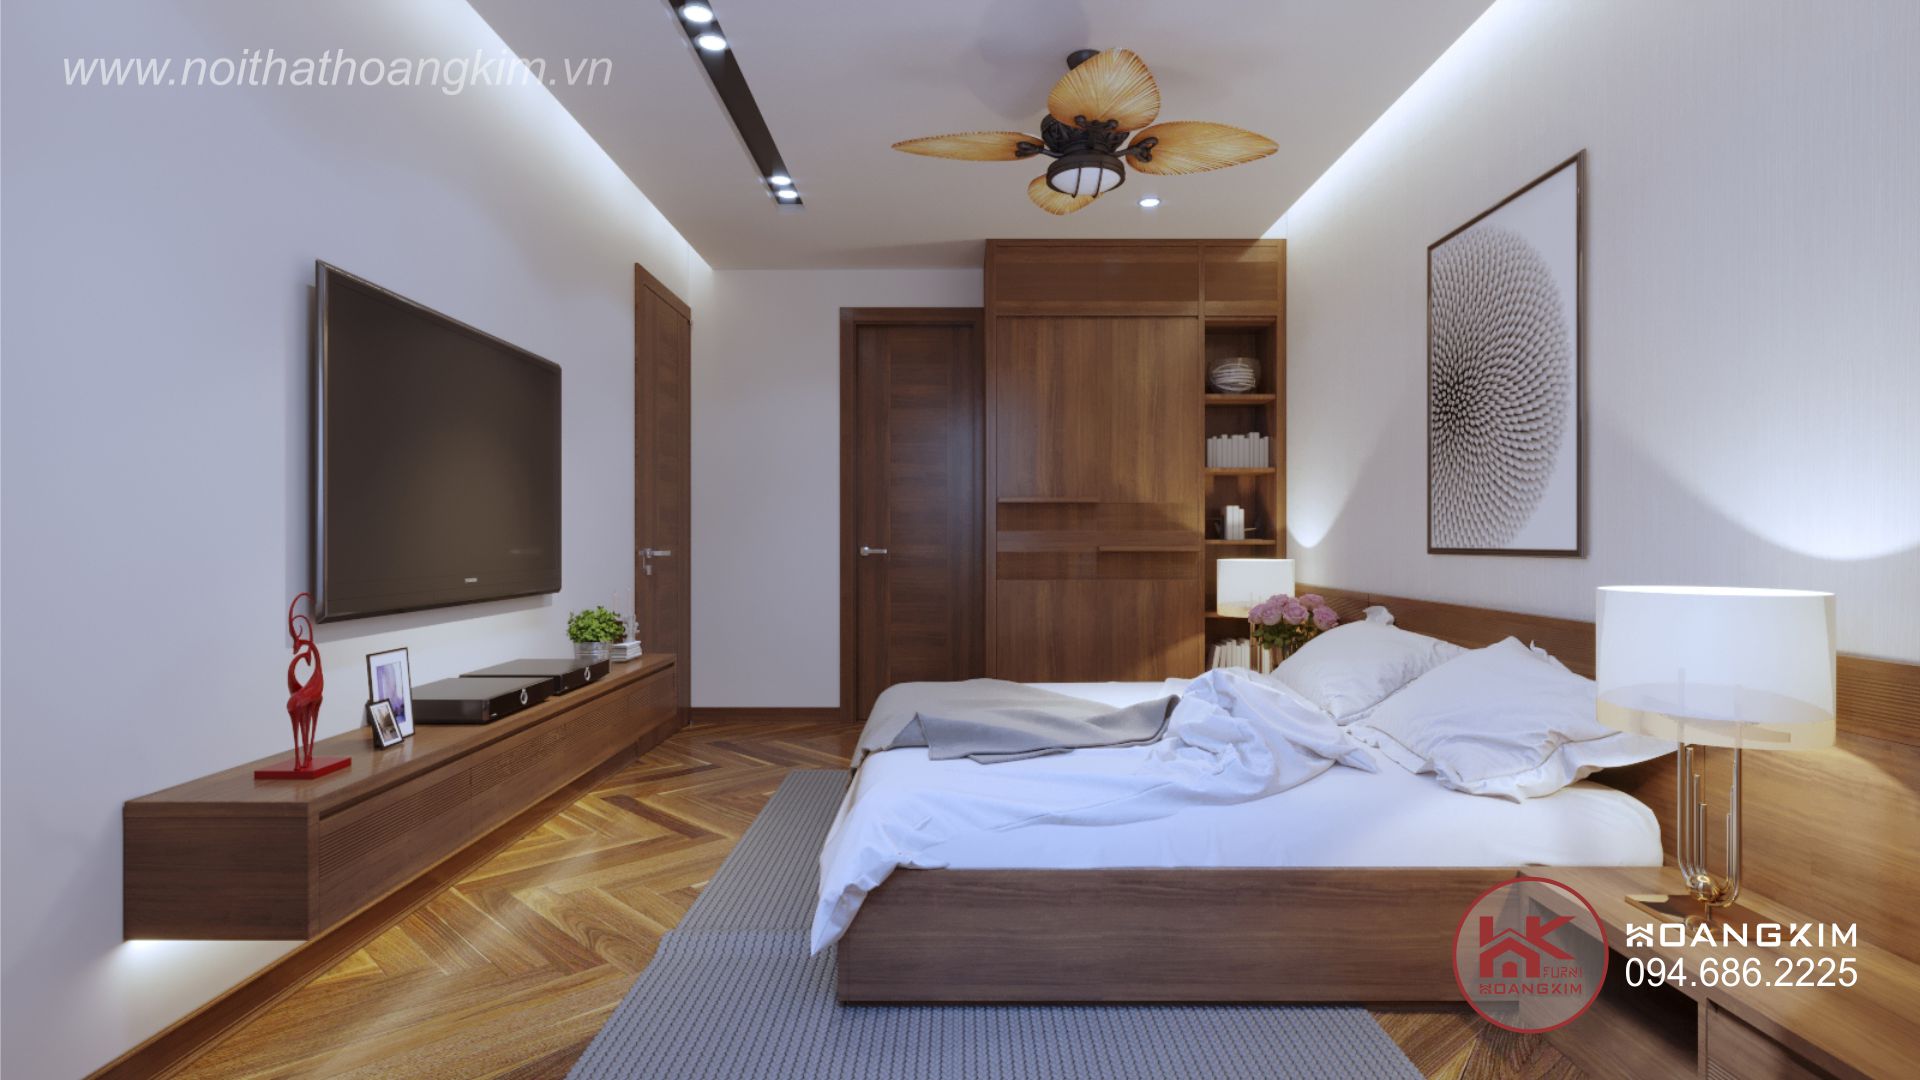 phòng ngủ chung cư mang phong cách nội thất tân cổ điển